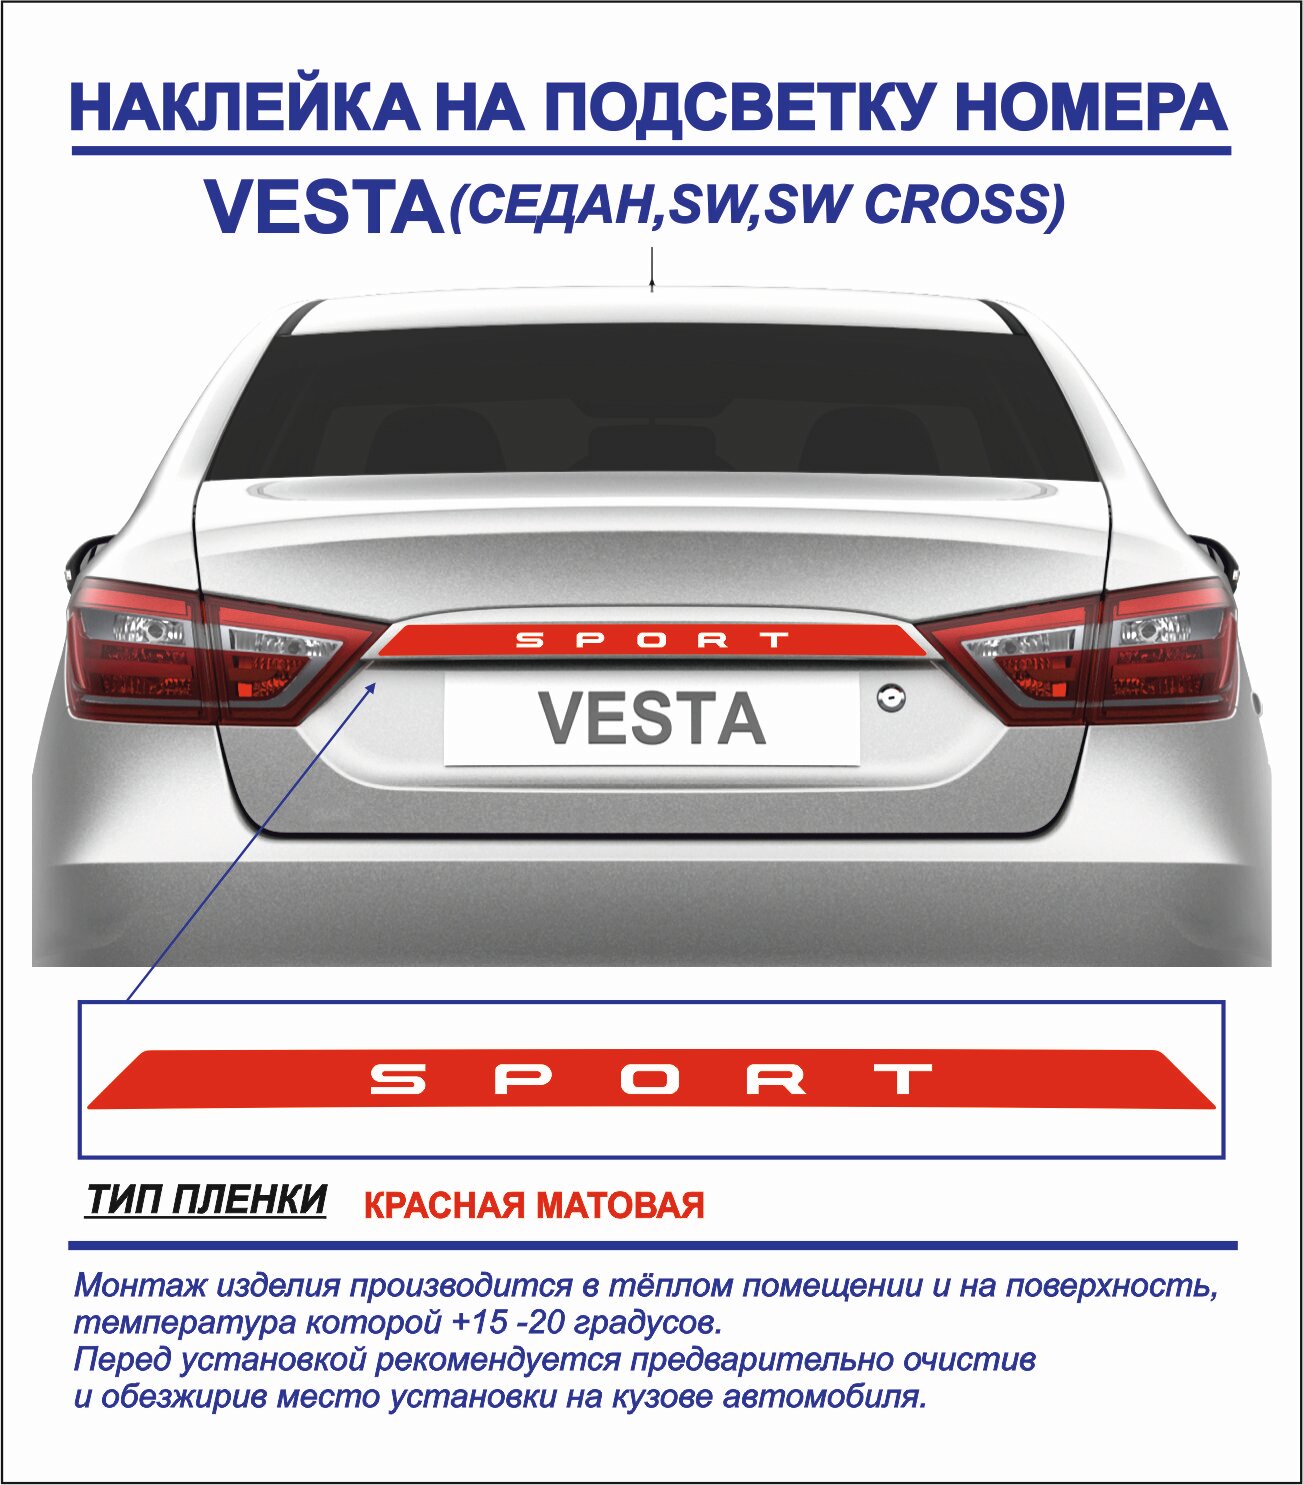 Наклейка-тюнинг Sport на подсветку номера для Vesta седан, sw, sw cross (красная матовая) 1шт.